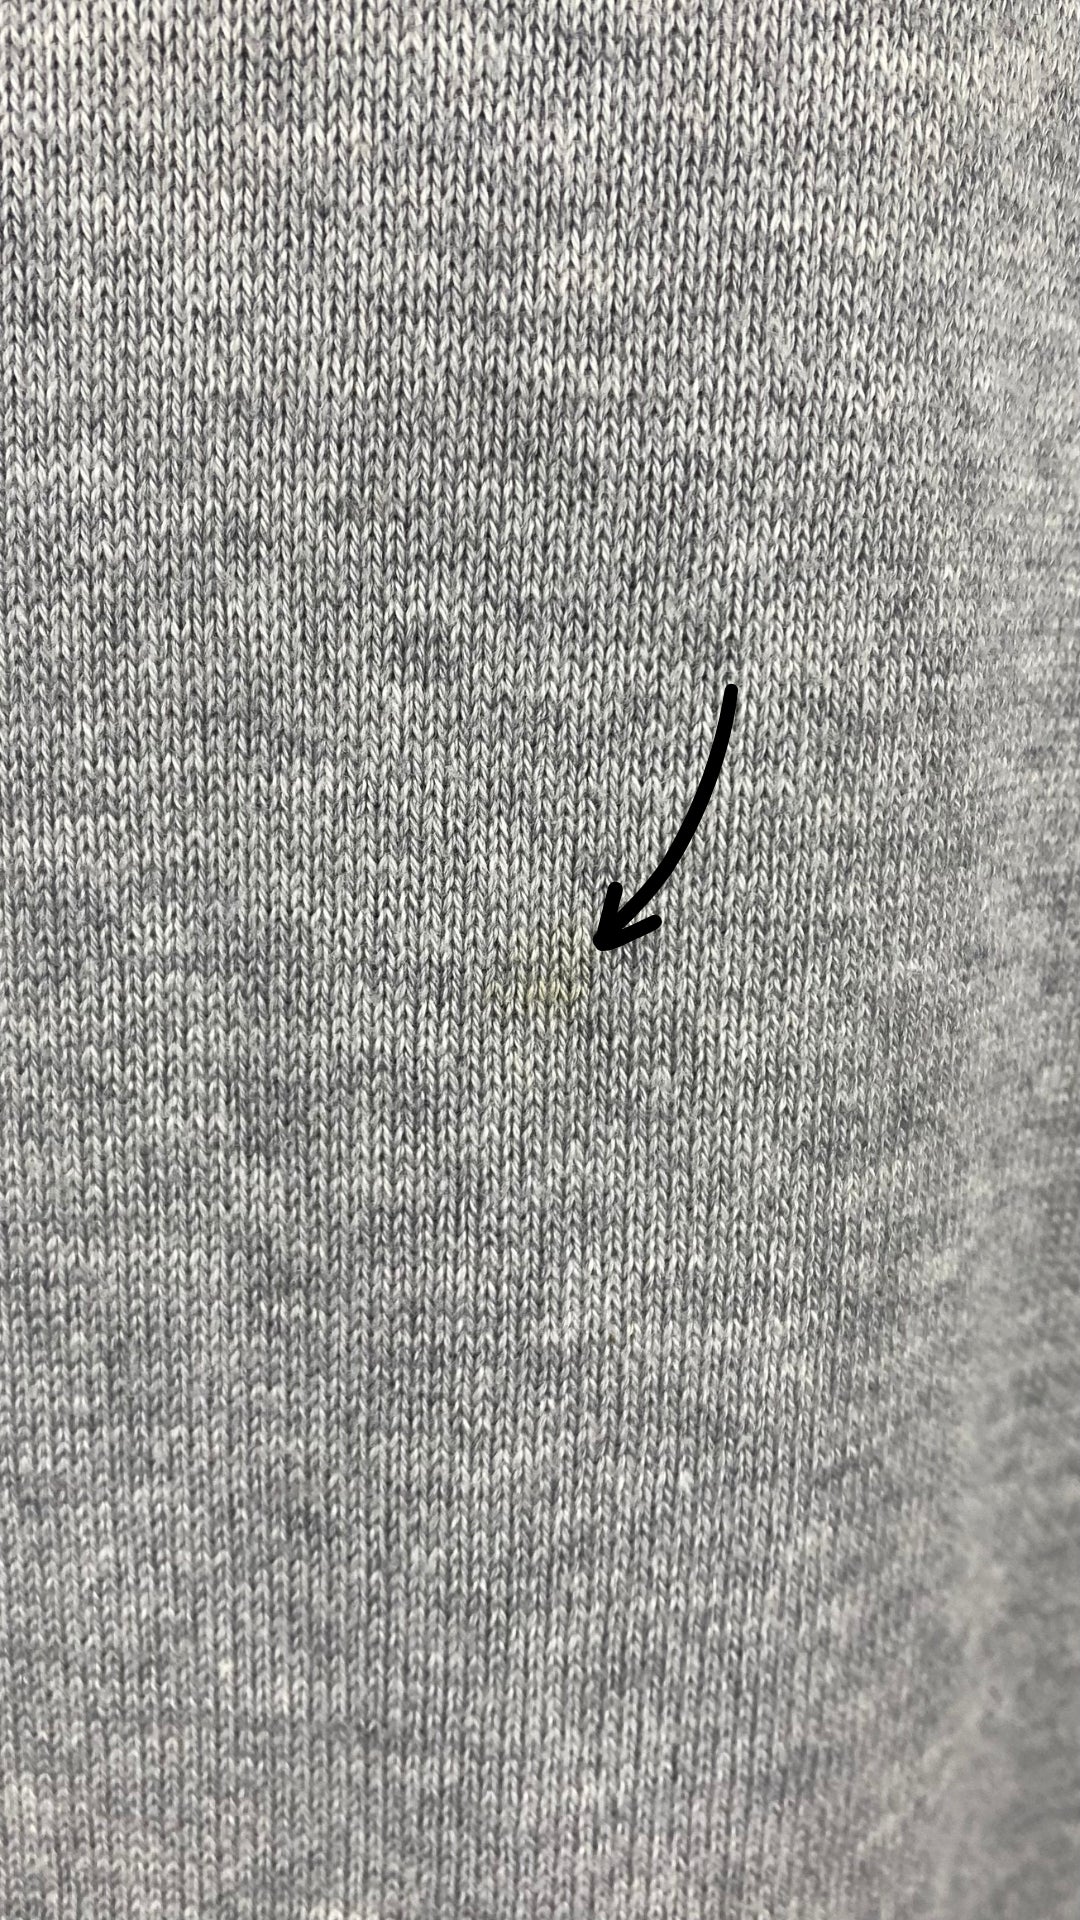 Chandail long tricot gris coton égyptien Ça va de soi, taille medium. Vue de la mini tache.